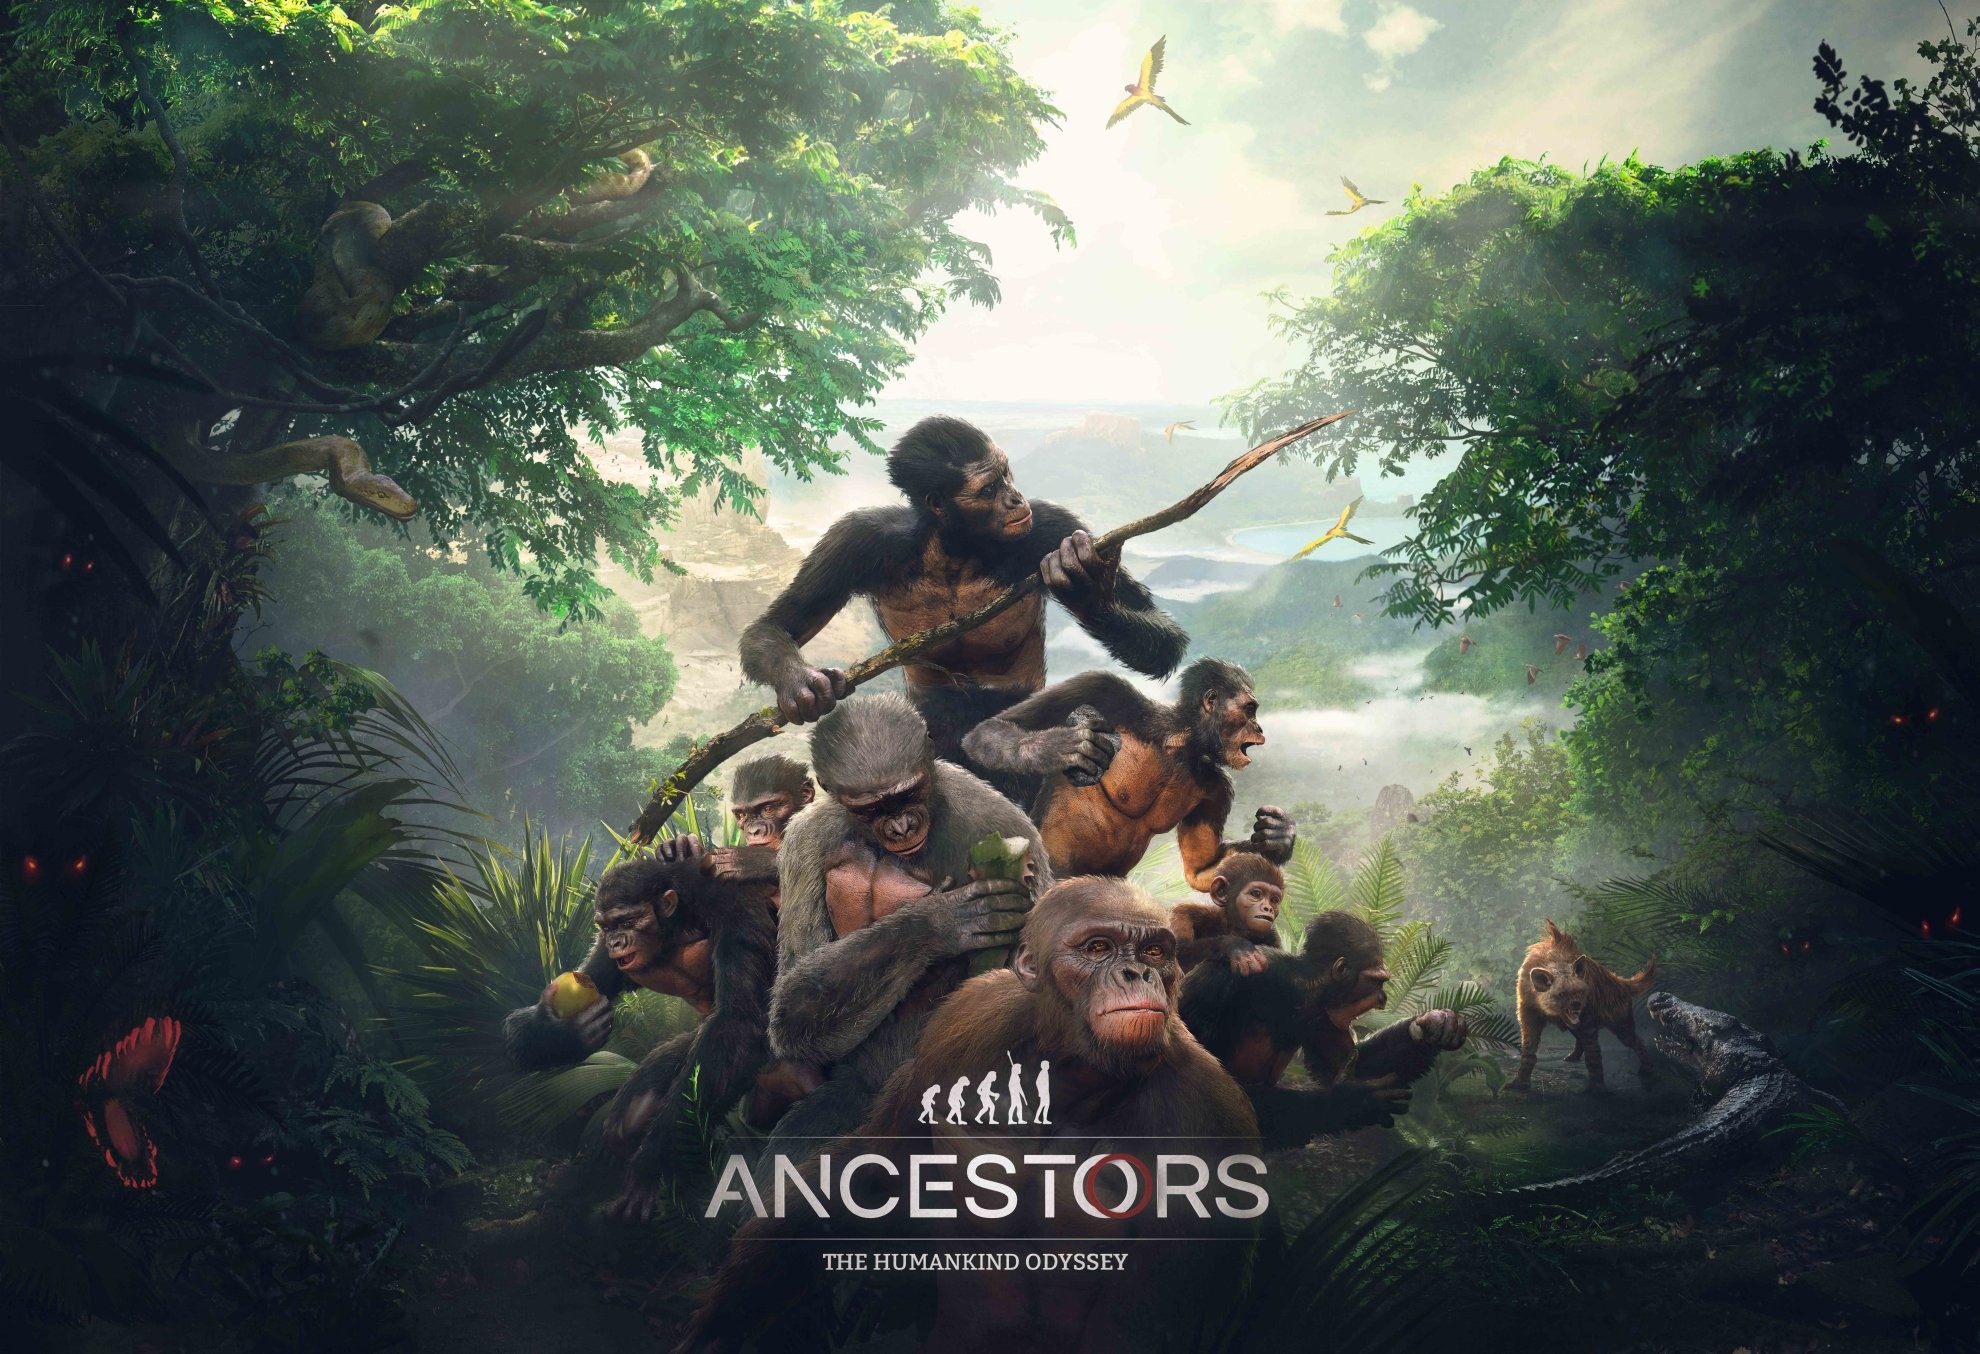 試玩 異色猿人動作遊戲 祖先 人類奧德賽 體驗千萬年前到人類誕生的歷史 Ancestors The Humankind Odyssey 巴哈姆特